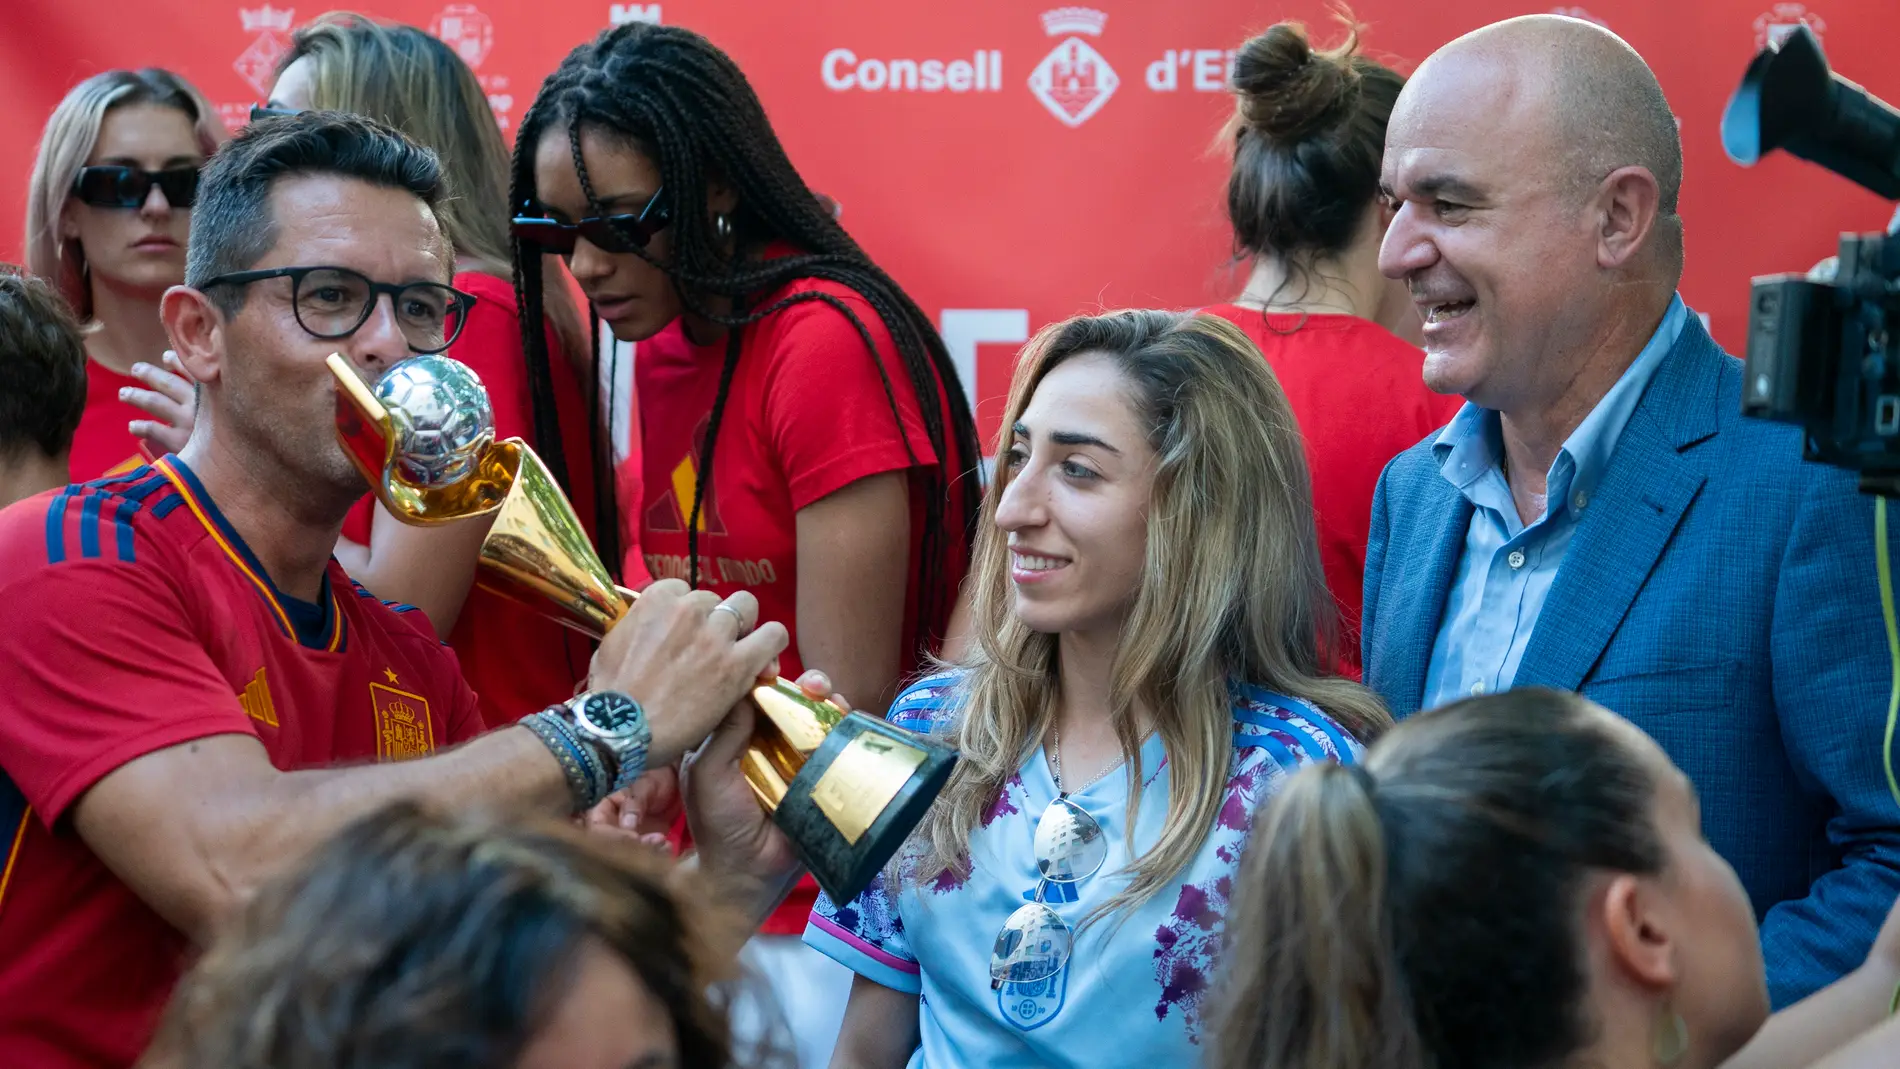  Vicent Marí: “En Ibiza empezó la suerte y hoy habéis vuelto aquí con este trofeo”